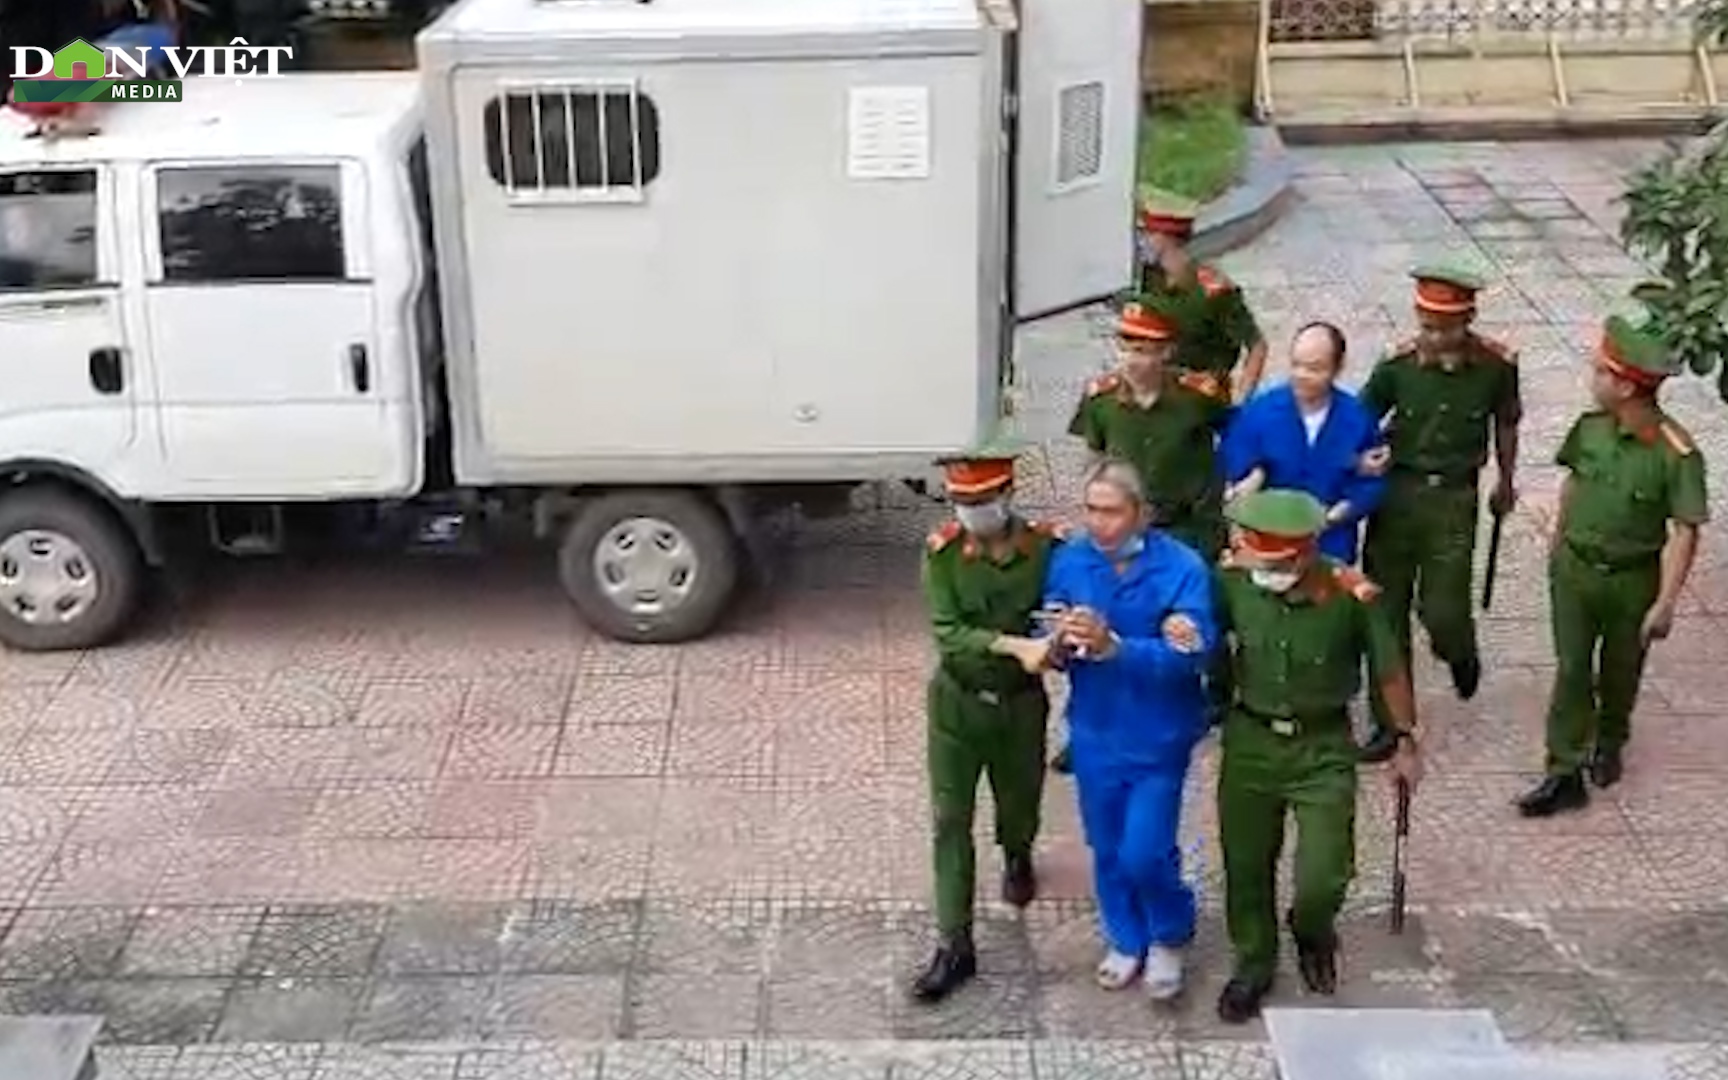 [NÓNG]: Đang xét xử cựu tu sĩ cùng đồng phạm giết người, phi tang xác ở Quảng Trị